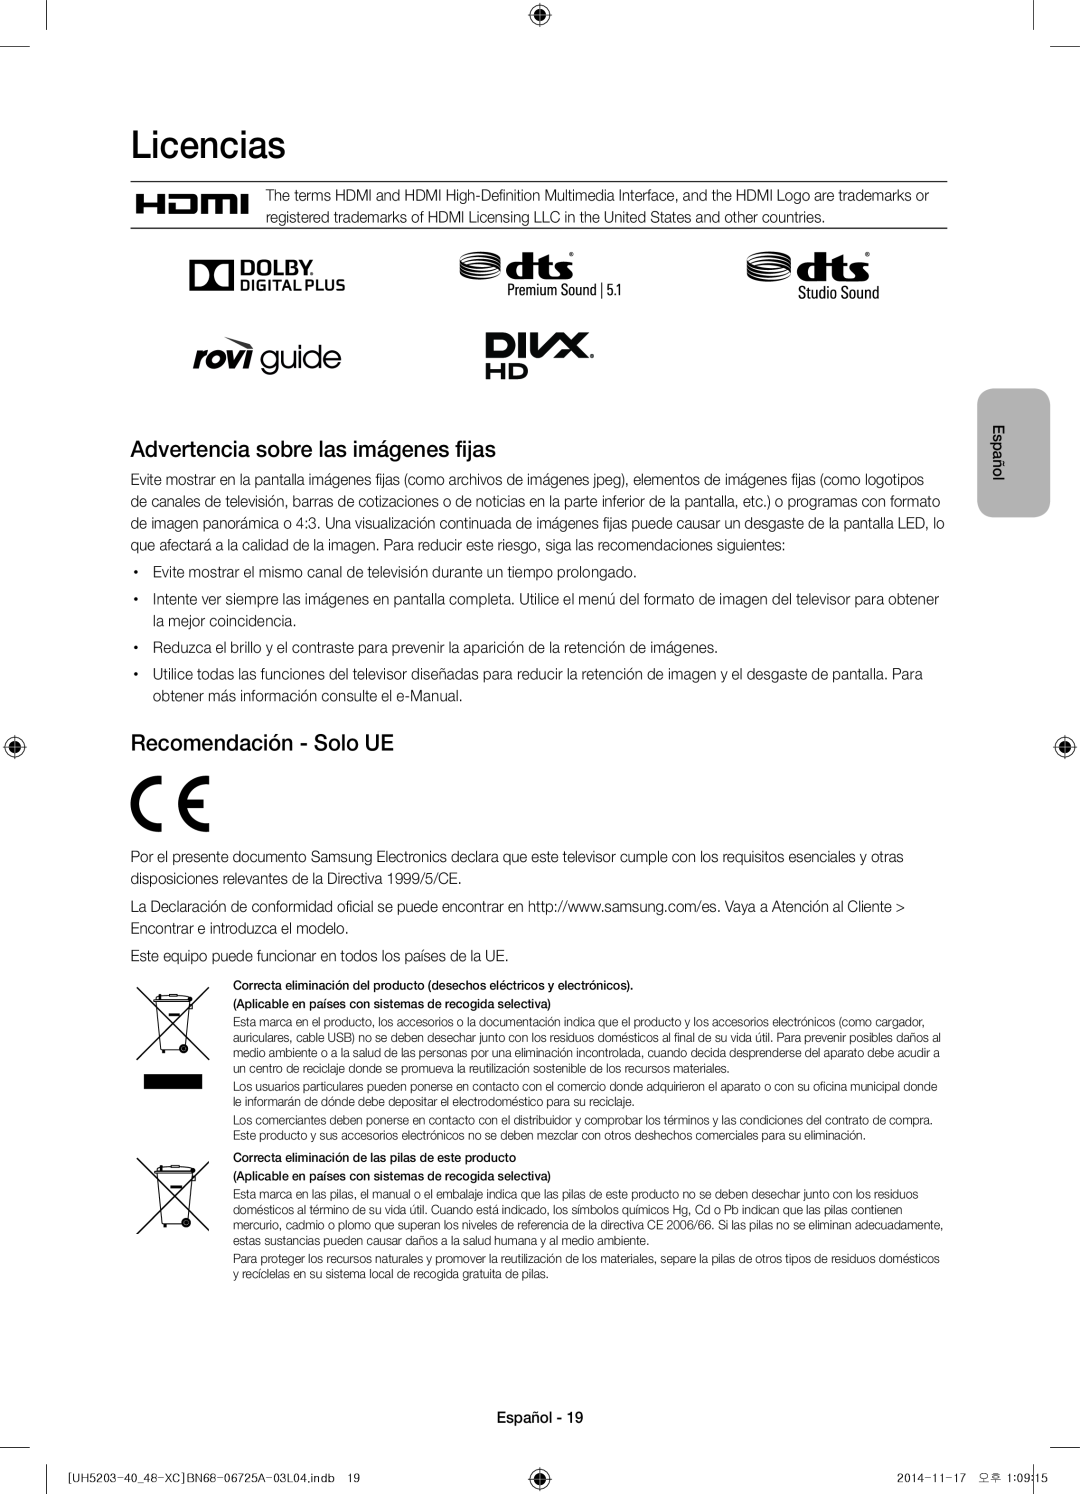 Samsung UE48H5203AWXXC, UE40H5203AWXXC Licencias, Advertencia sobre las imágenes fijas, Recomendación - Solo UE, Español 